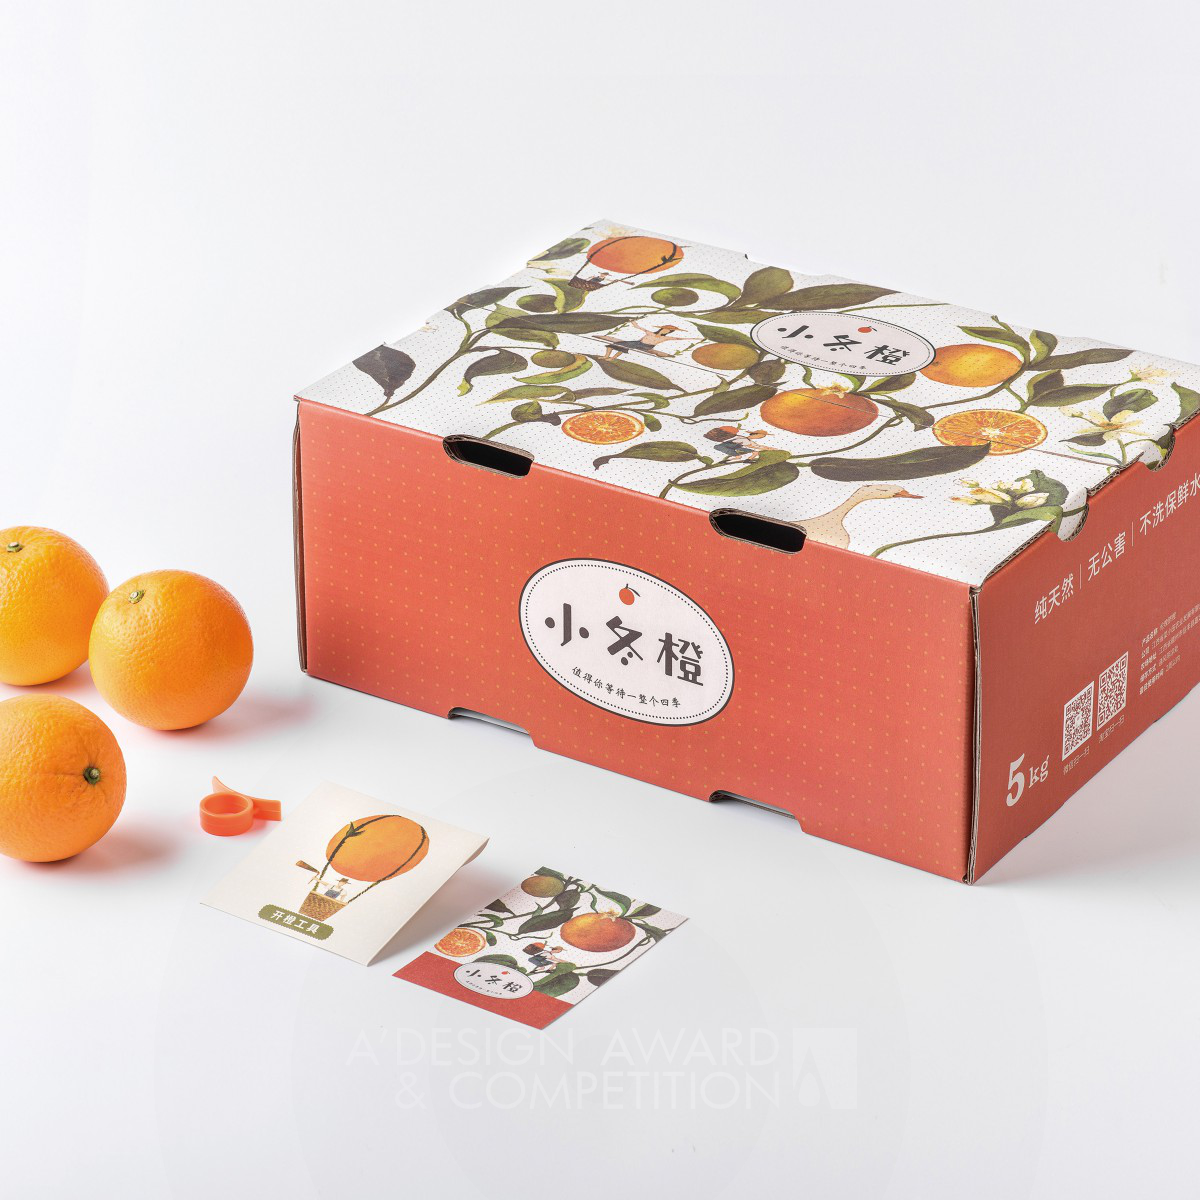 Winter Orange Package by Chao Xu